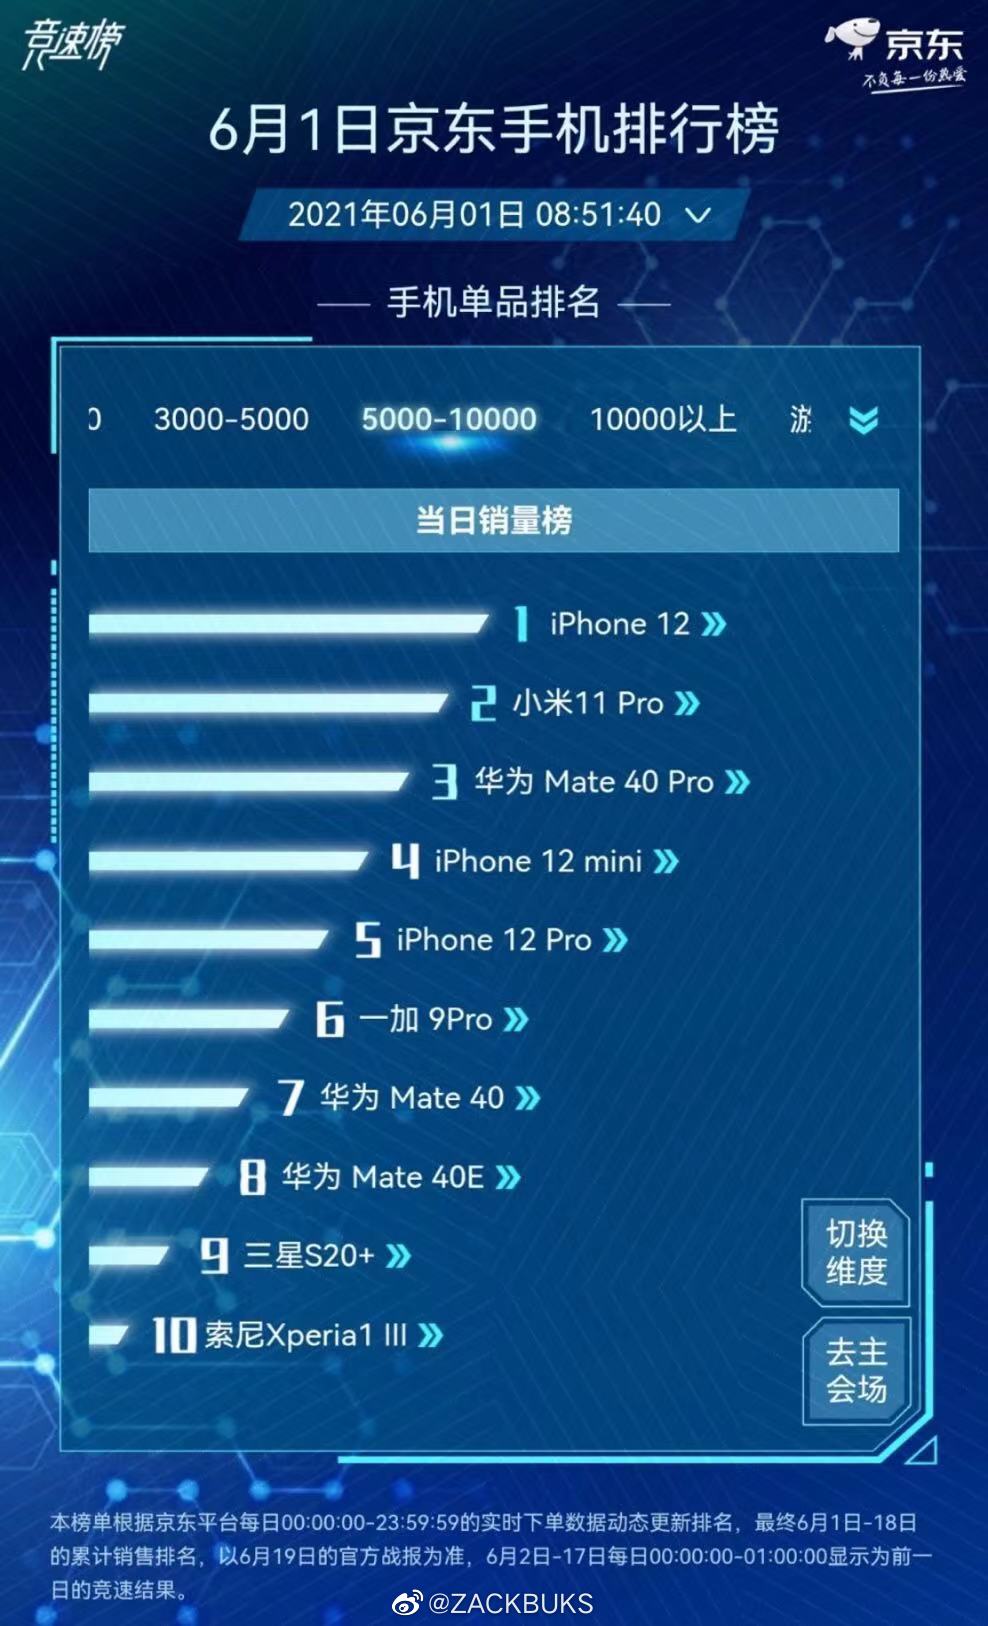  Sony впервые оказалась в топ-10 топовых смартфонов в Китае Другие устройства  - vnezapno_sony_vpervye_vorvalas_v_top_10_popularnyh_smartfonov_kitaa_picture2_0